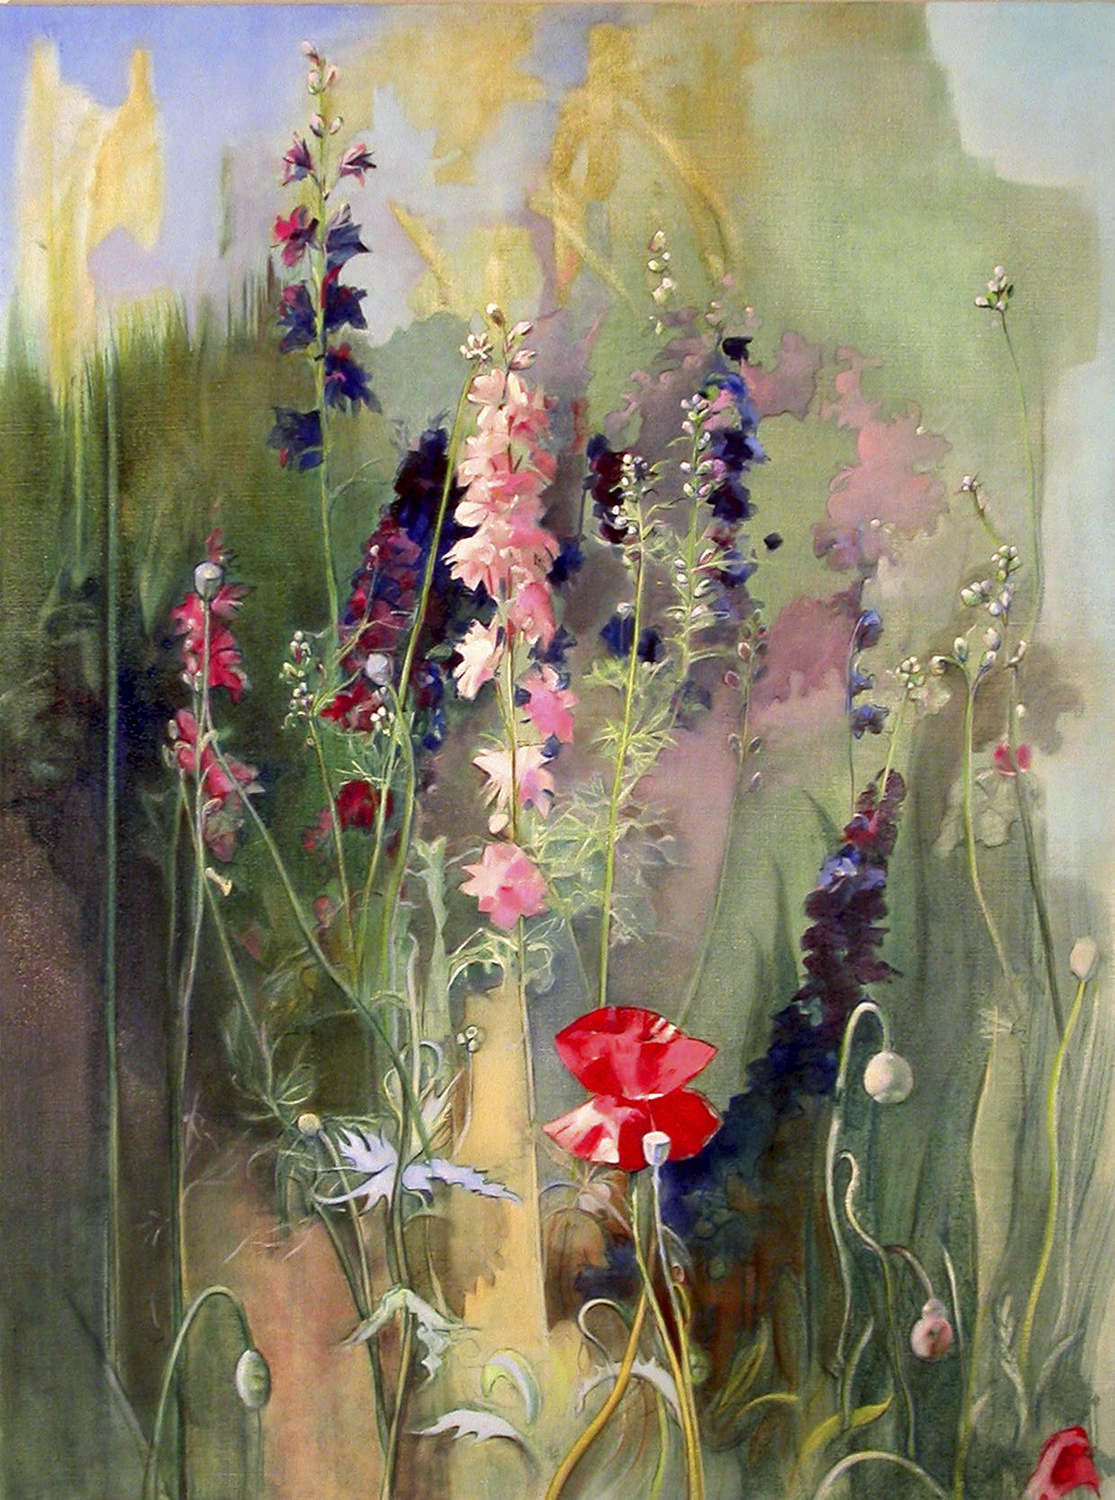   Poppy in the Garden *  oil on linen 30" x 40"  2005 